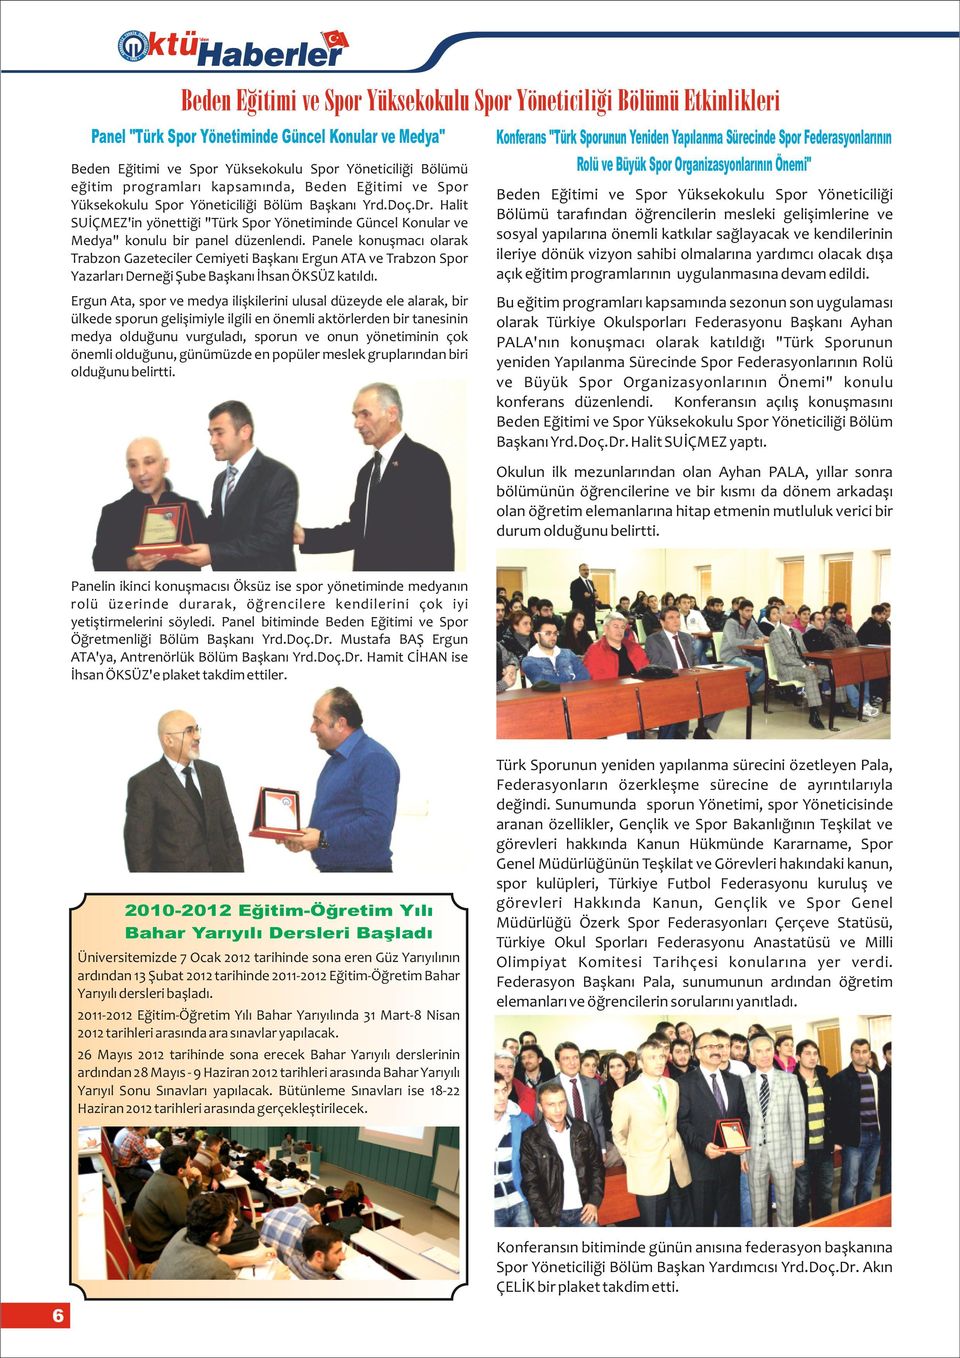 Halit SUİÇMEZ'in yönettiği "Türk Spor Yönetiminde Güncel Konular ve Medya" konulu bir panel düzenlendi.